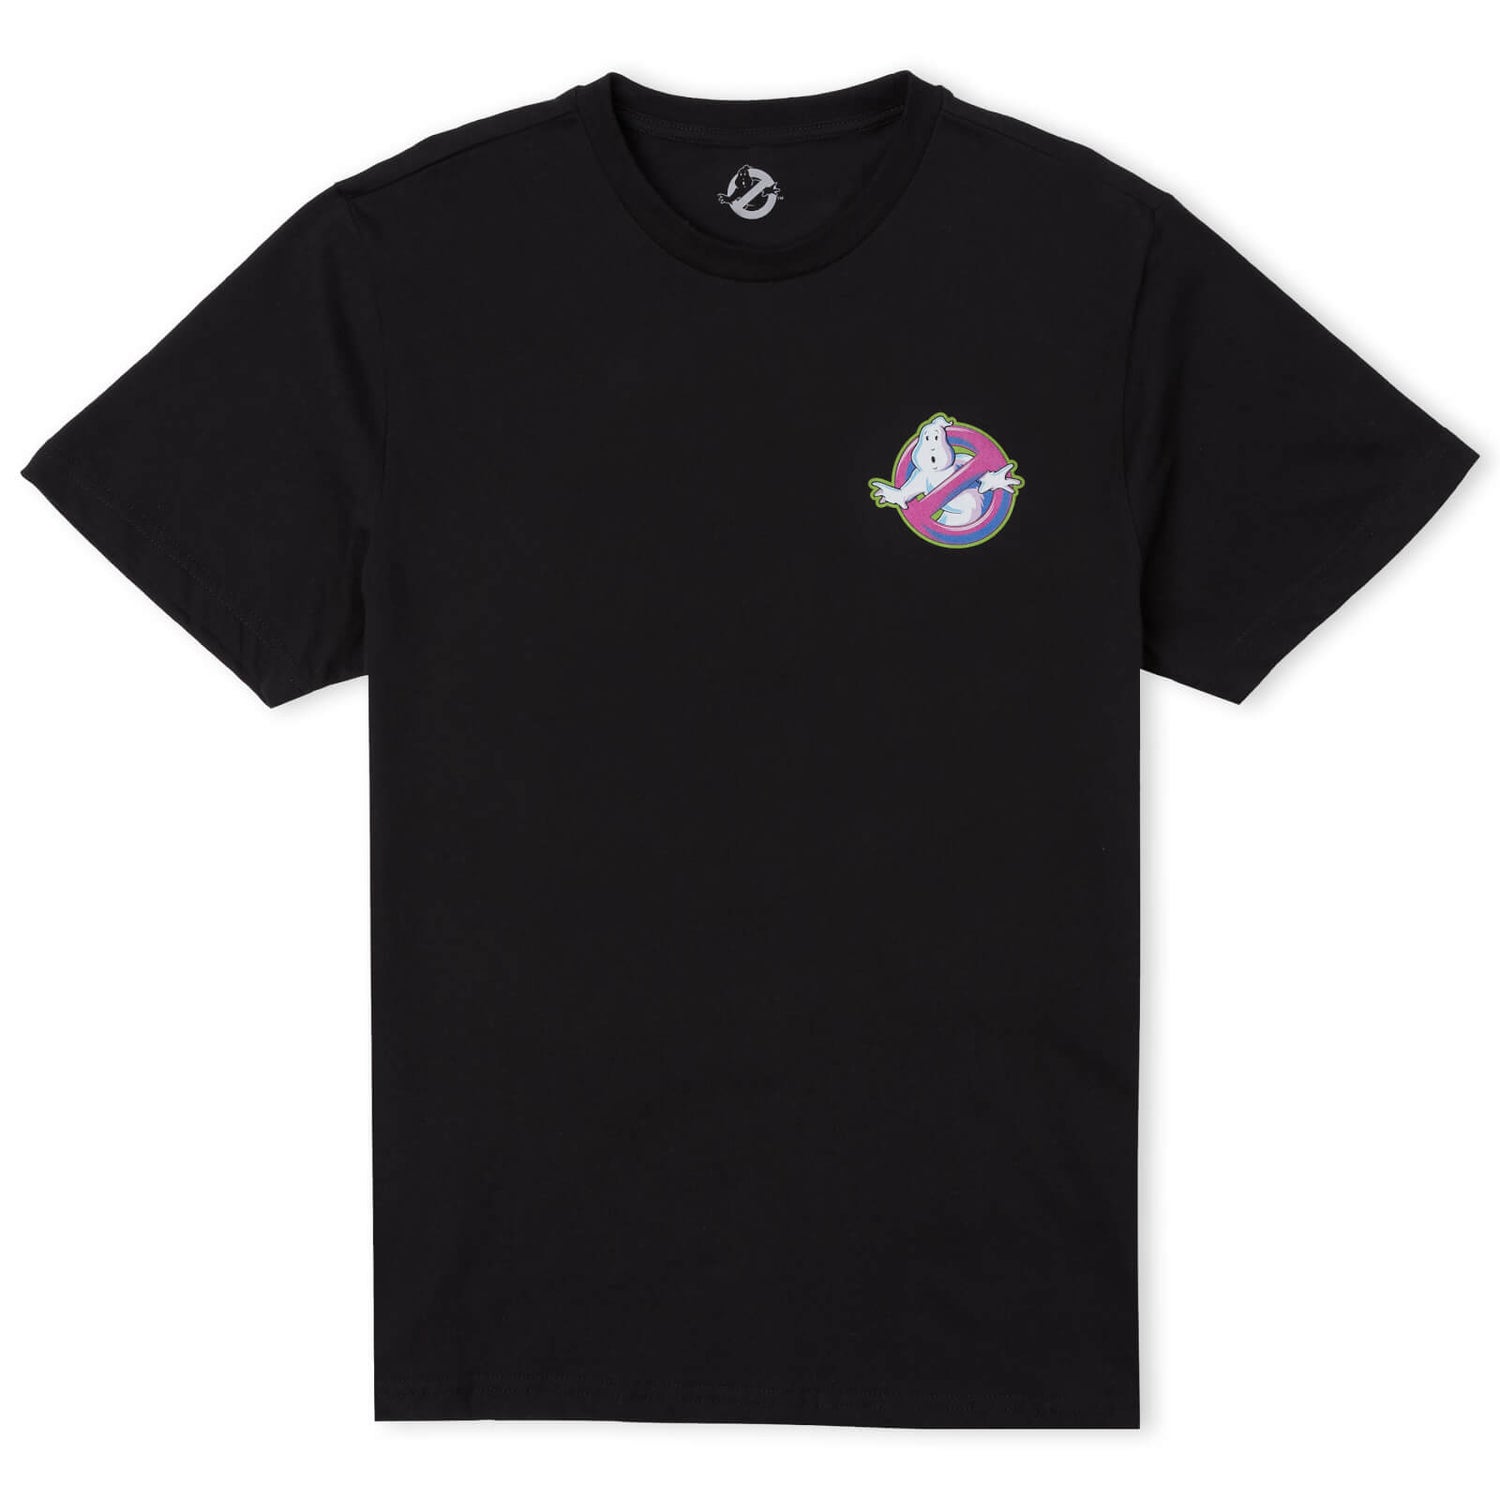 Camiseta extragrande de peso pesado unisex de los Cazafantasmas Roast Him - Negro